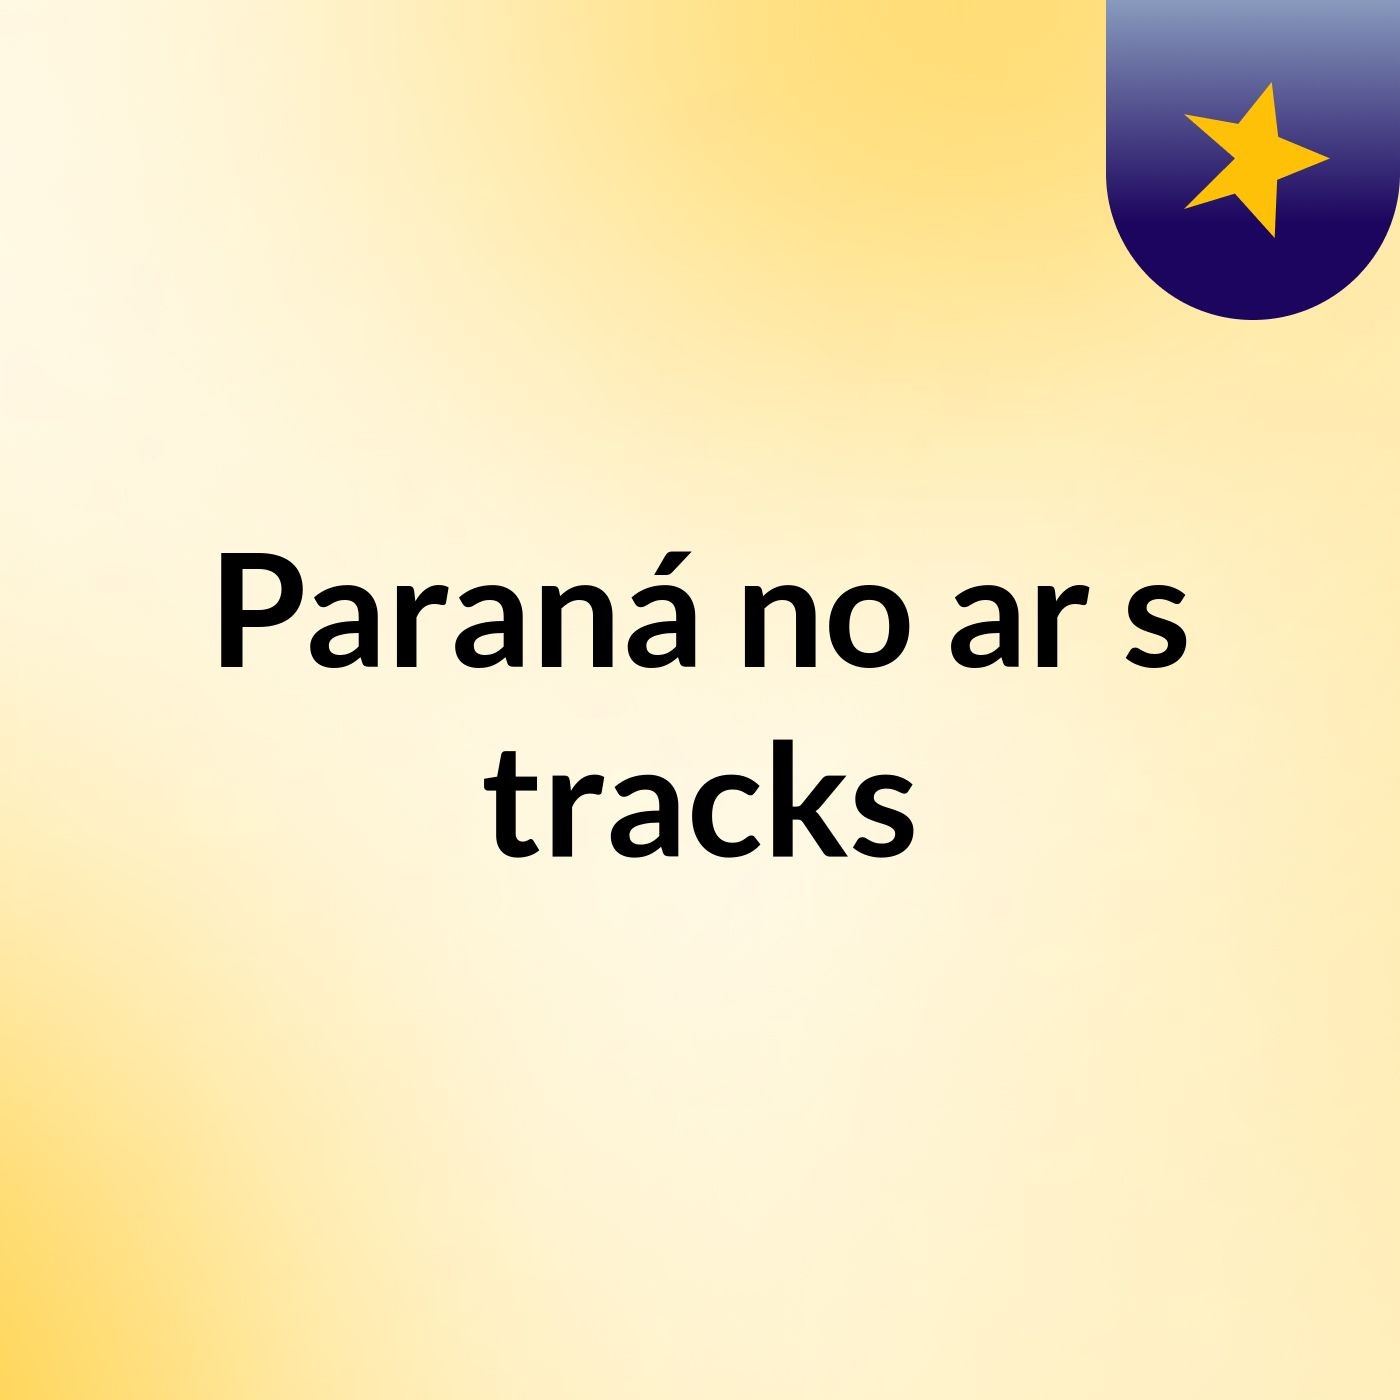 Paraná no ar's tracks